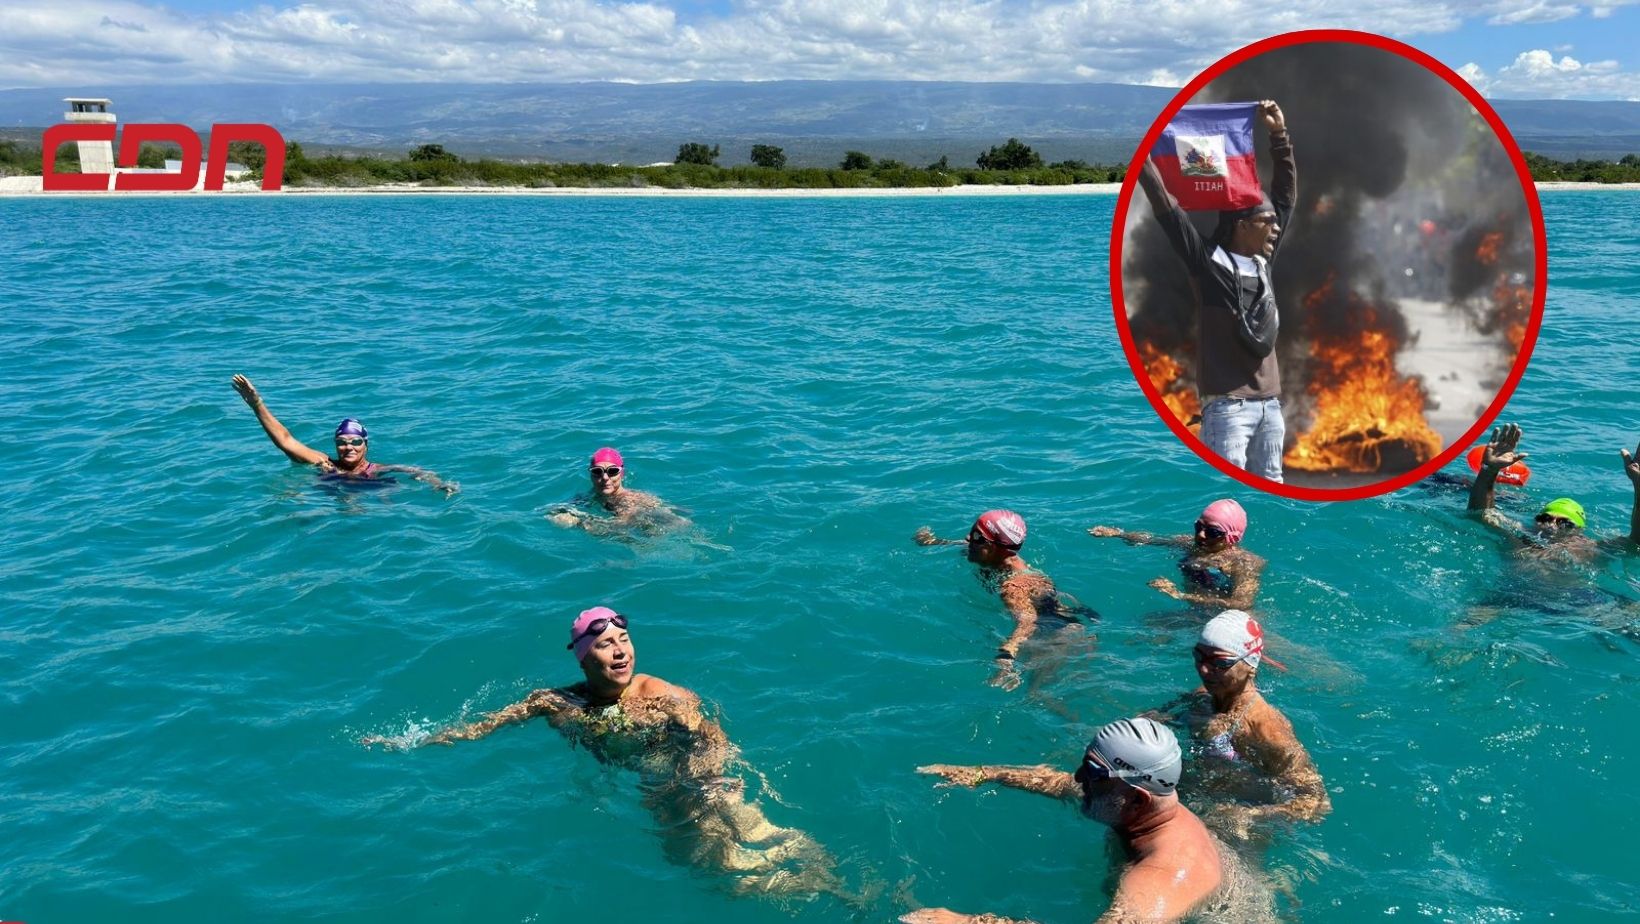 Nadadores profesionales de Brasil, cumplen su sueño realidad, al cruzar frontera marítima nadando. Foto: Fuente CDN Digital